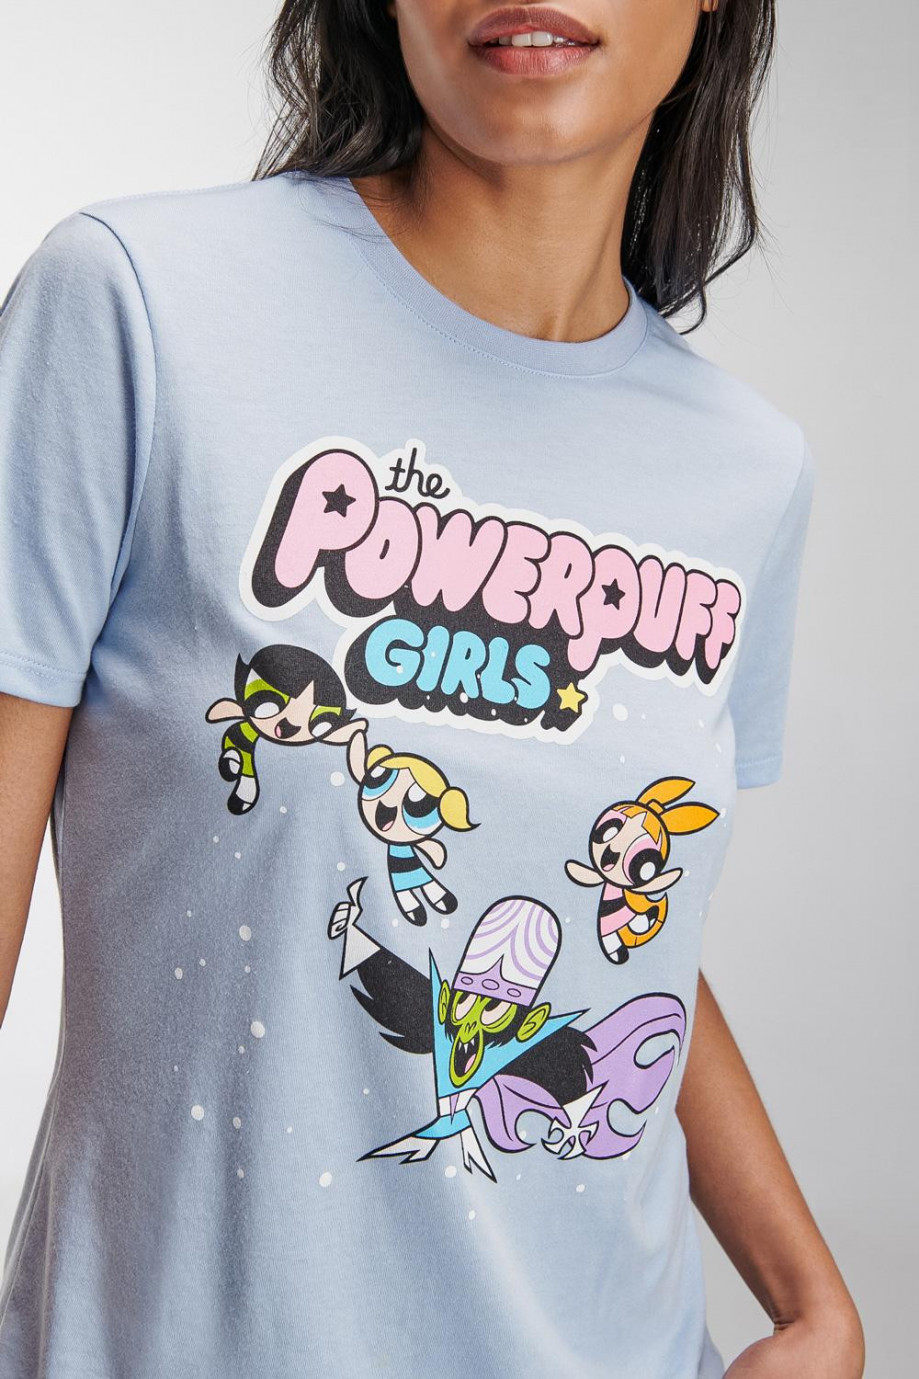 Camiseta manga corta, estampado de Chicas Superpoderosas.